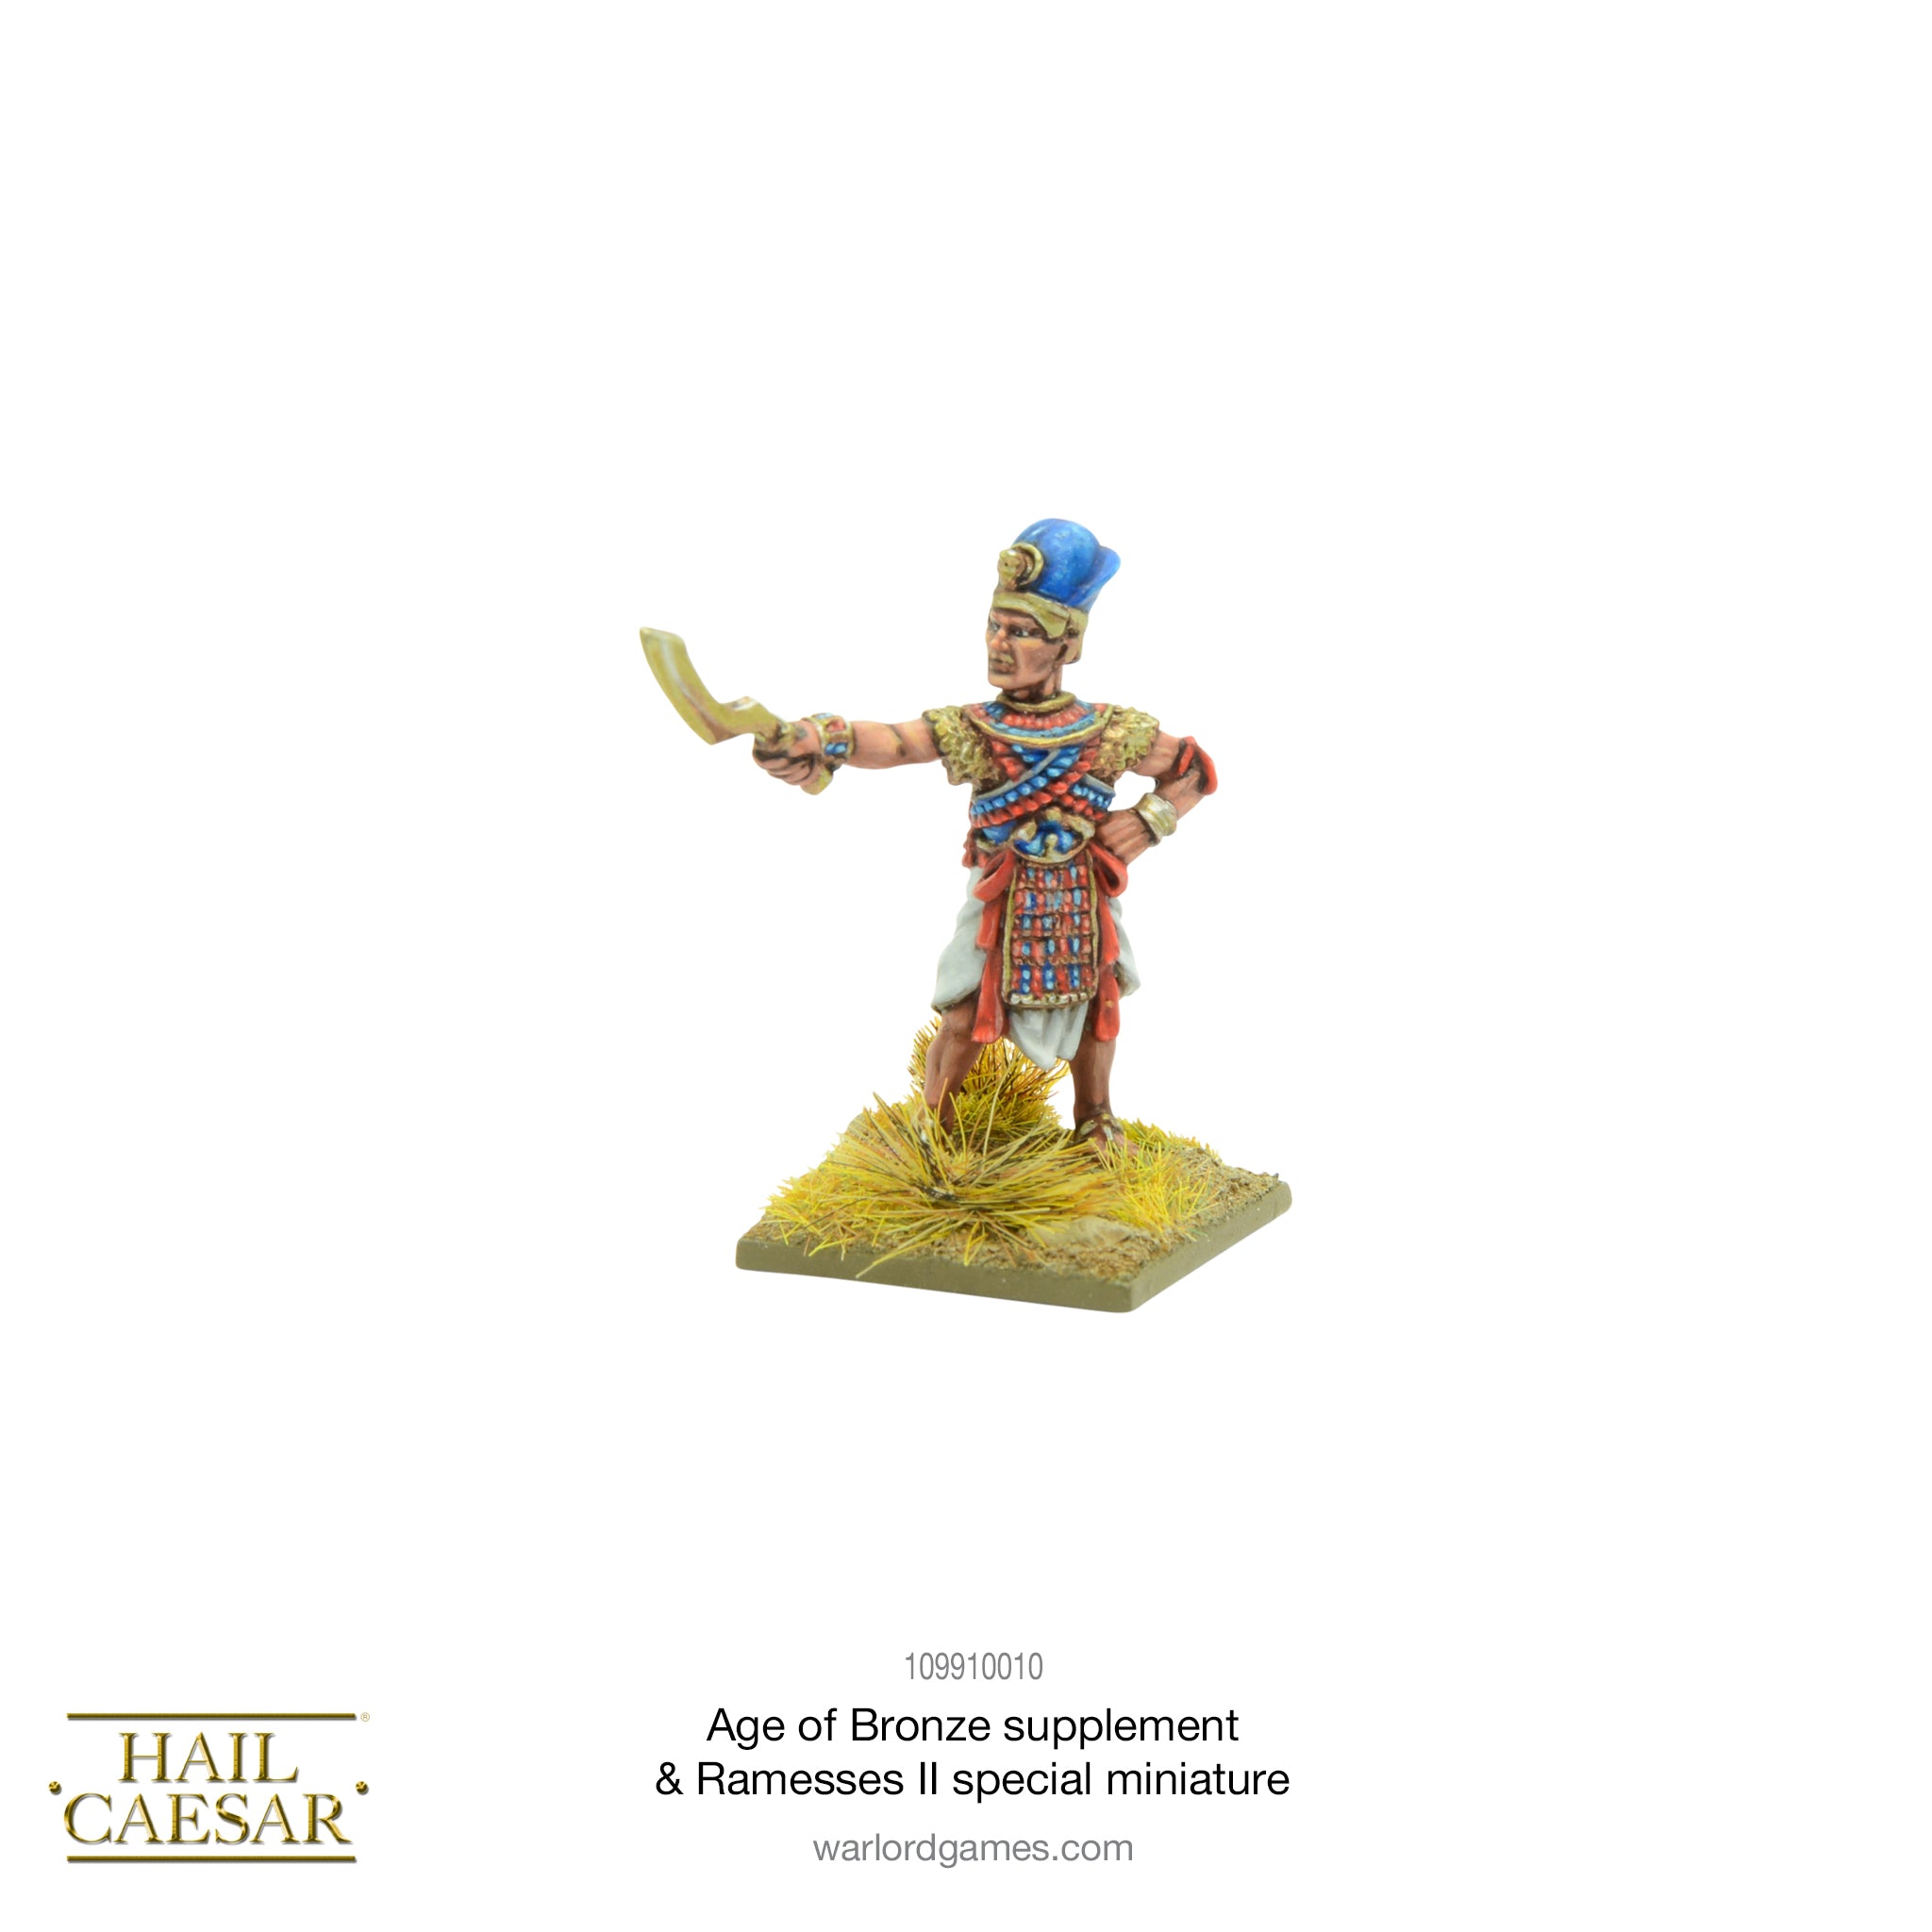 Hail Caesar - Age of Bronze supplement